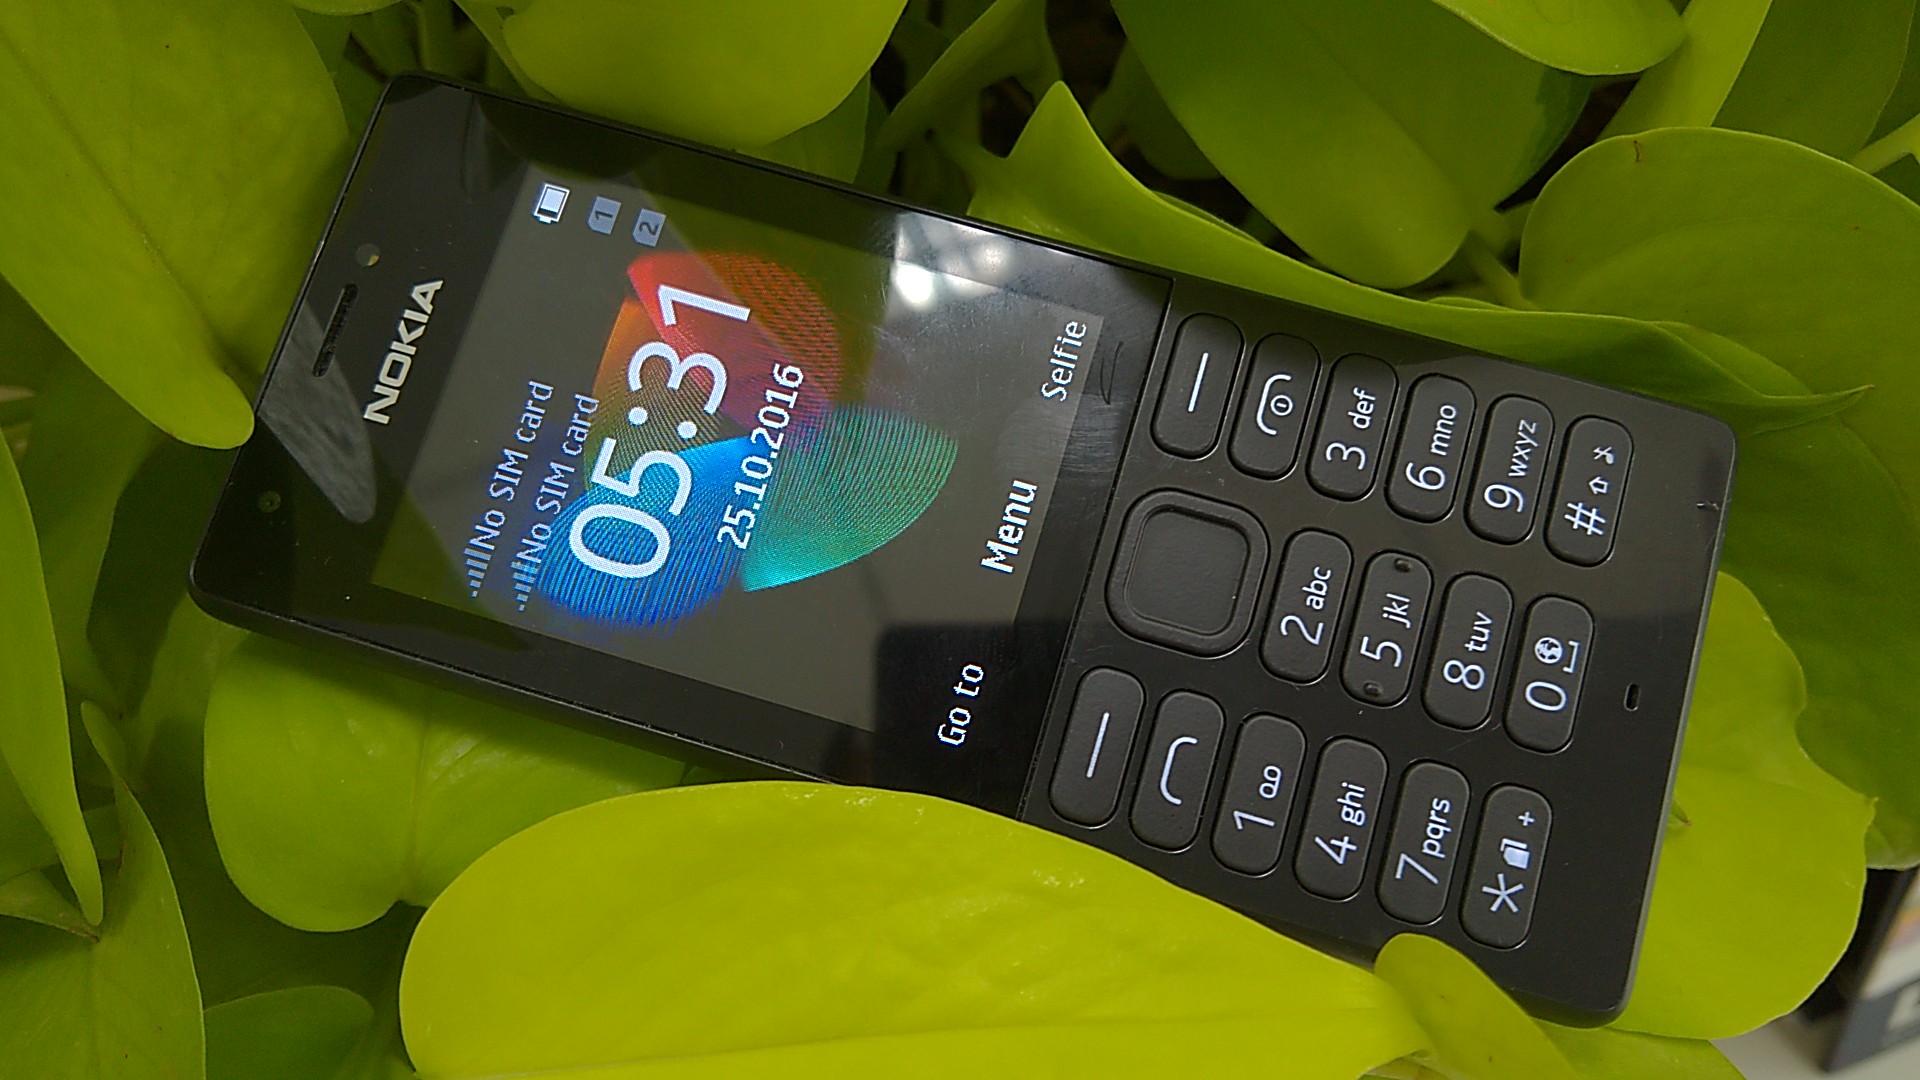 Nokia 216: Chụp ảnh đẹp, nghe nhạc sôi động và lướt web mượt mà - tất cả đều có trên Nokia 216! Với thiết kế bền bỉ, dung lượng pin lớn và tính năng hữu ích, Nokia 216 là sự lựa chọn hoàn hảo cho những ai yêu thích những chiếc điện thoại đơn giản nhưng đầy tiện ích.